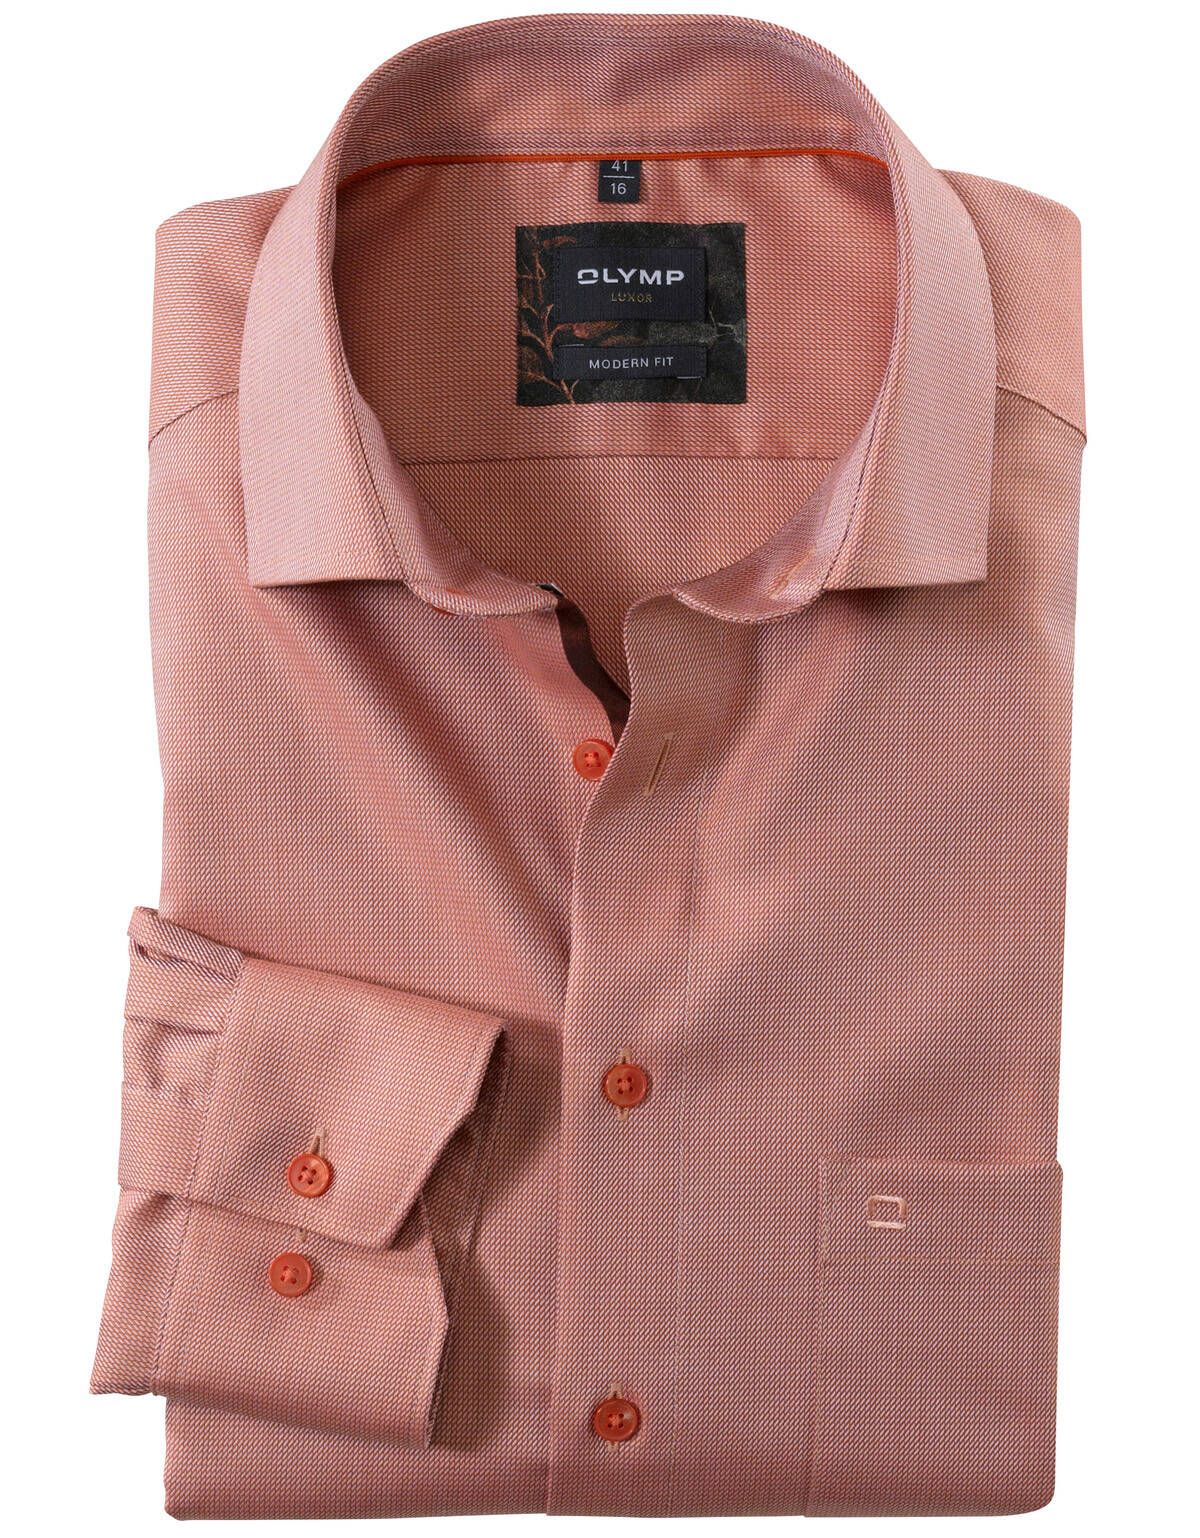 Рубашка оранжевая мужская OLYMP Luxor, modern fit[ОРАНЖЕВЫЙ]